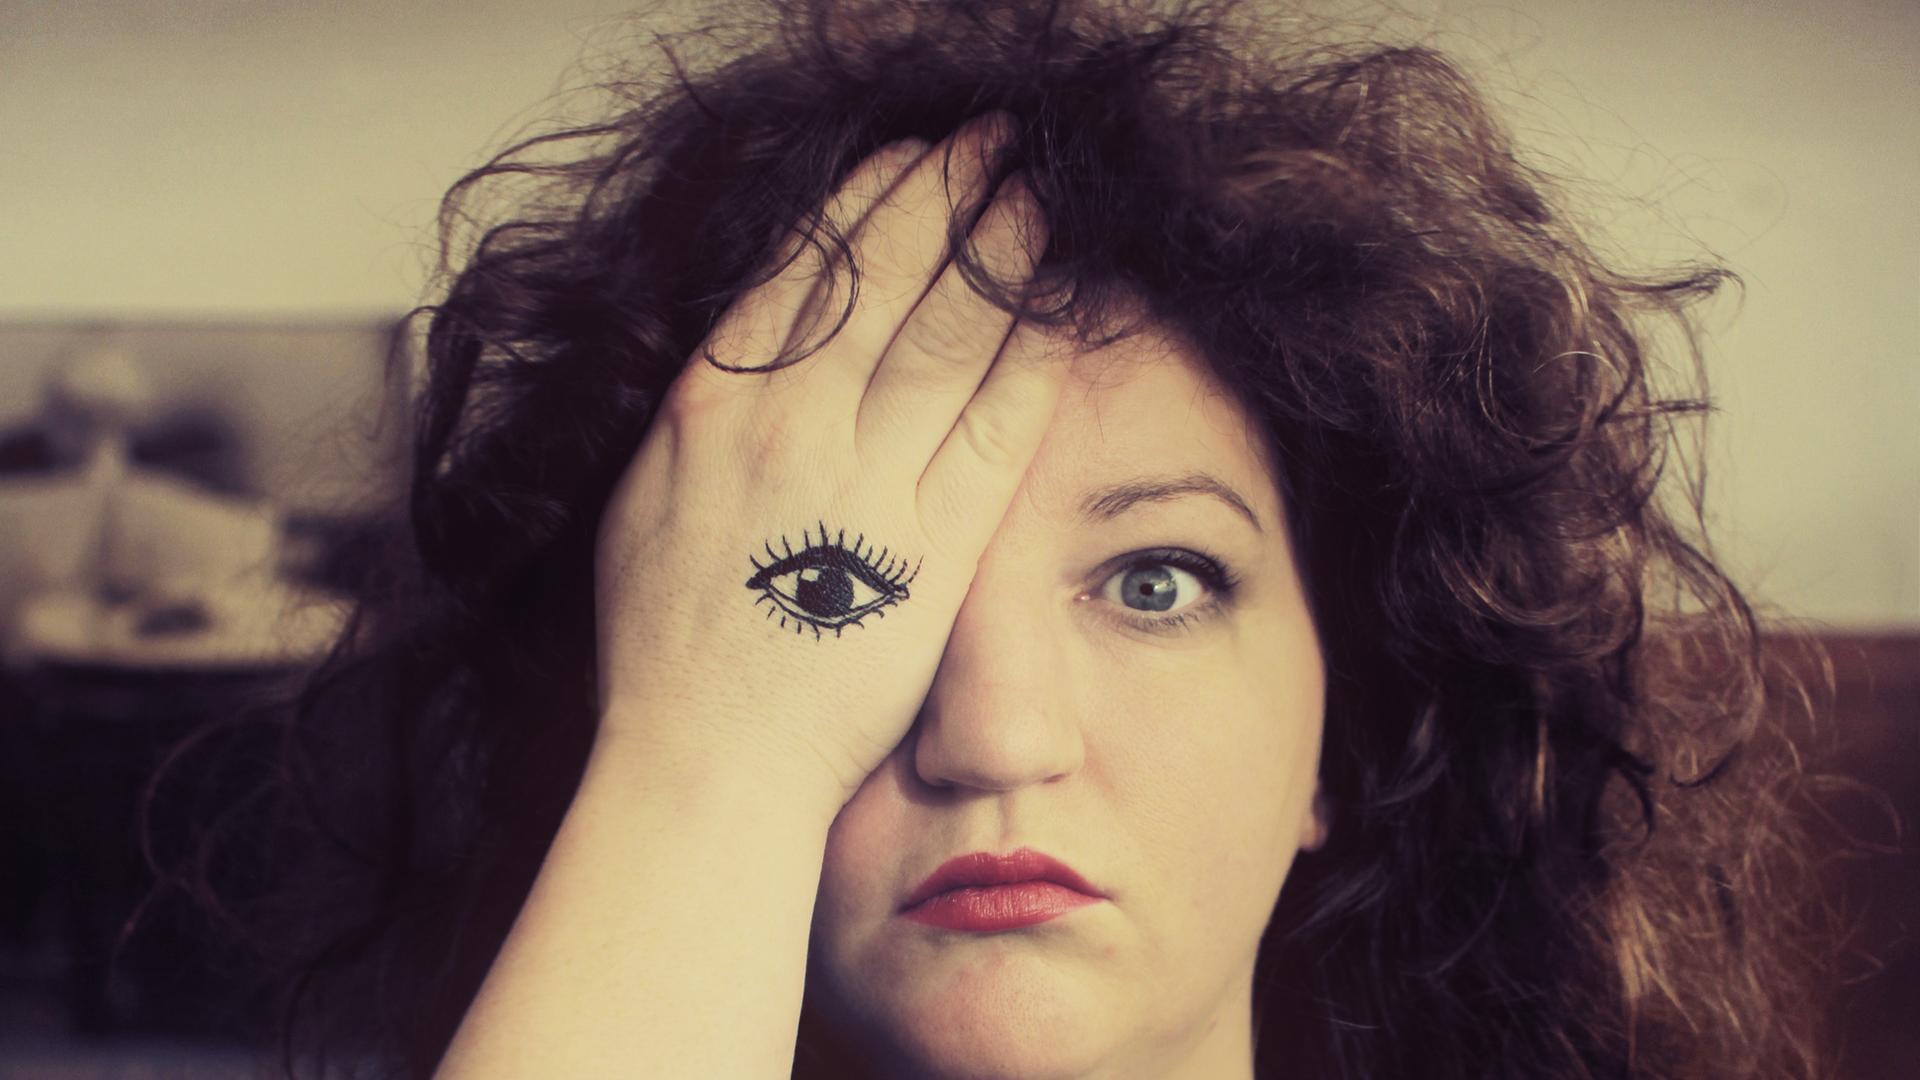 Musikerin Anna Mateur im Porträt. Ihre rechte Hand verdeckt ihr rechtes Auge. Auf ihre Handfläche ist ein Auge gemalt.